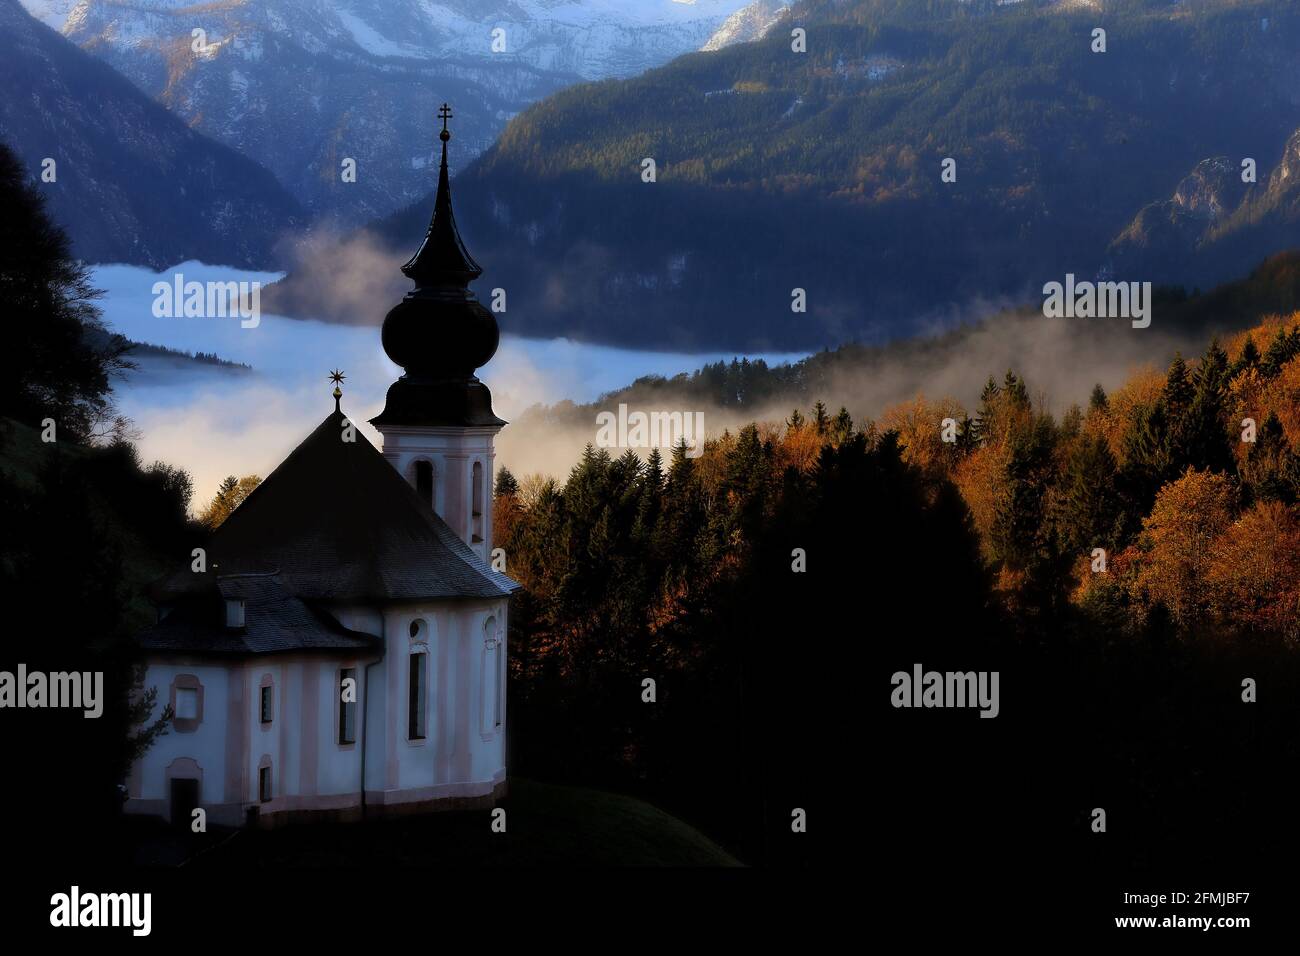 Der Watzmann in den Alpen ist das dominante Bergmassiv der Berchtesgadener Alpen und einer der berühmtesten Berge Deutschlands Foto Stock